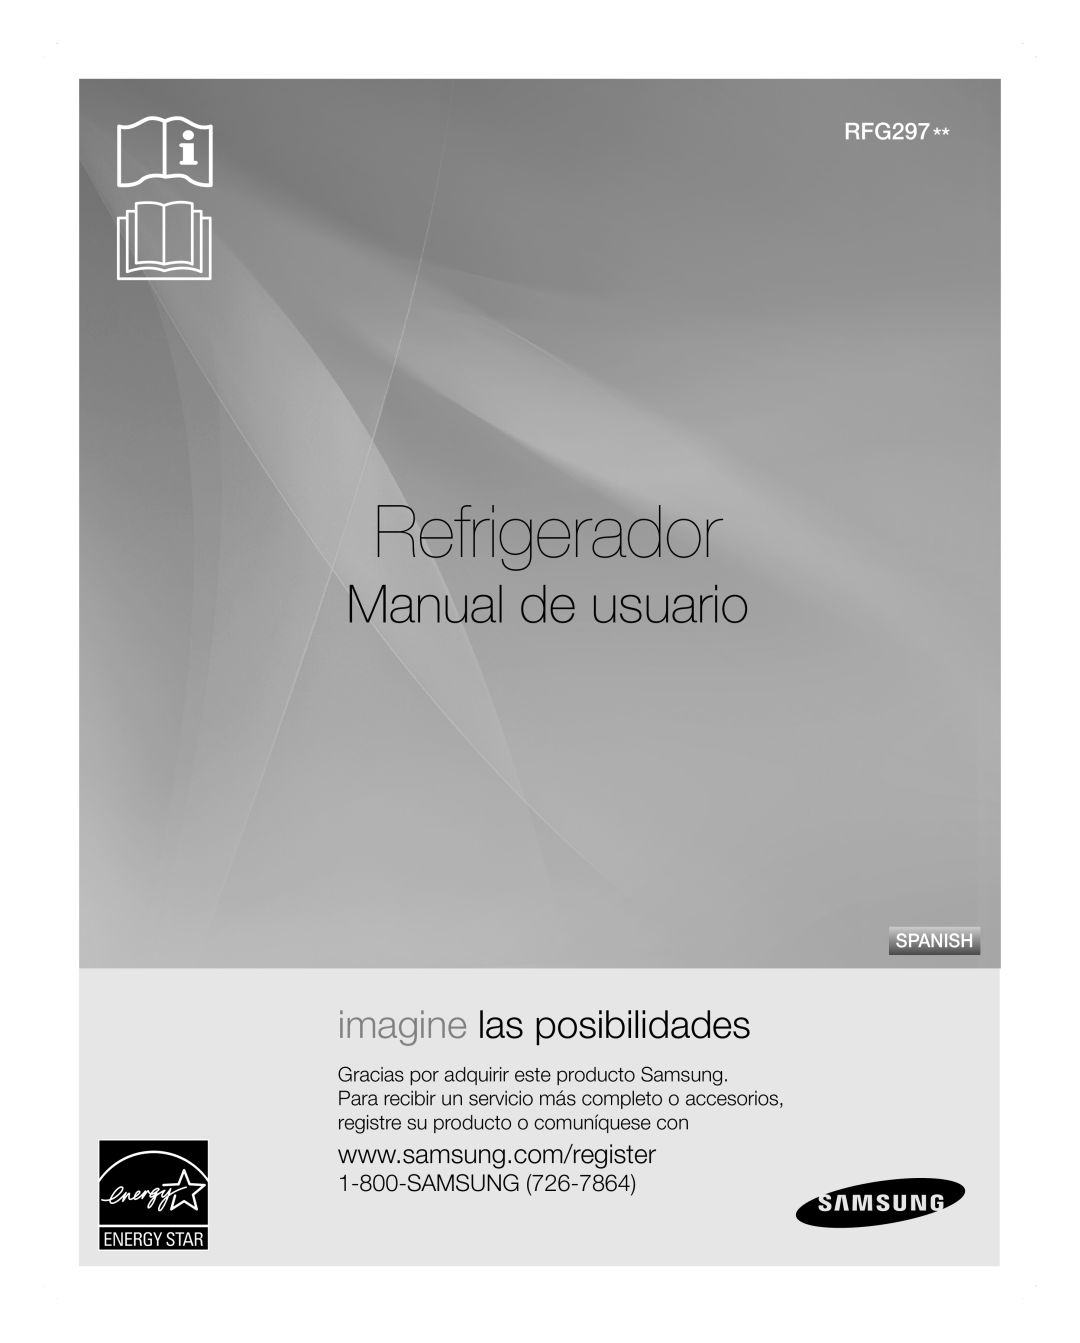 Samsung RFG297AARS user manual Refrigerador, Manual de usuario, imagine las posibilidades, Samsung, Spanish 